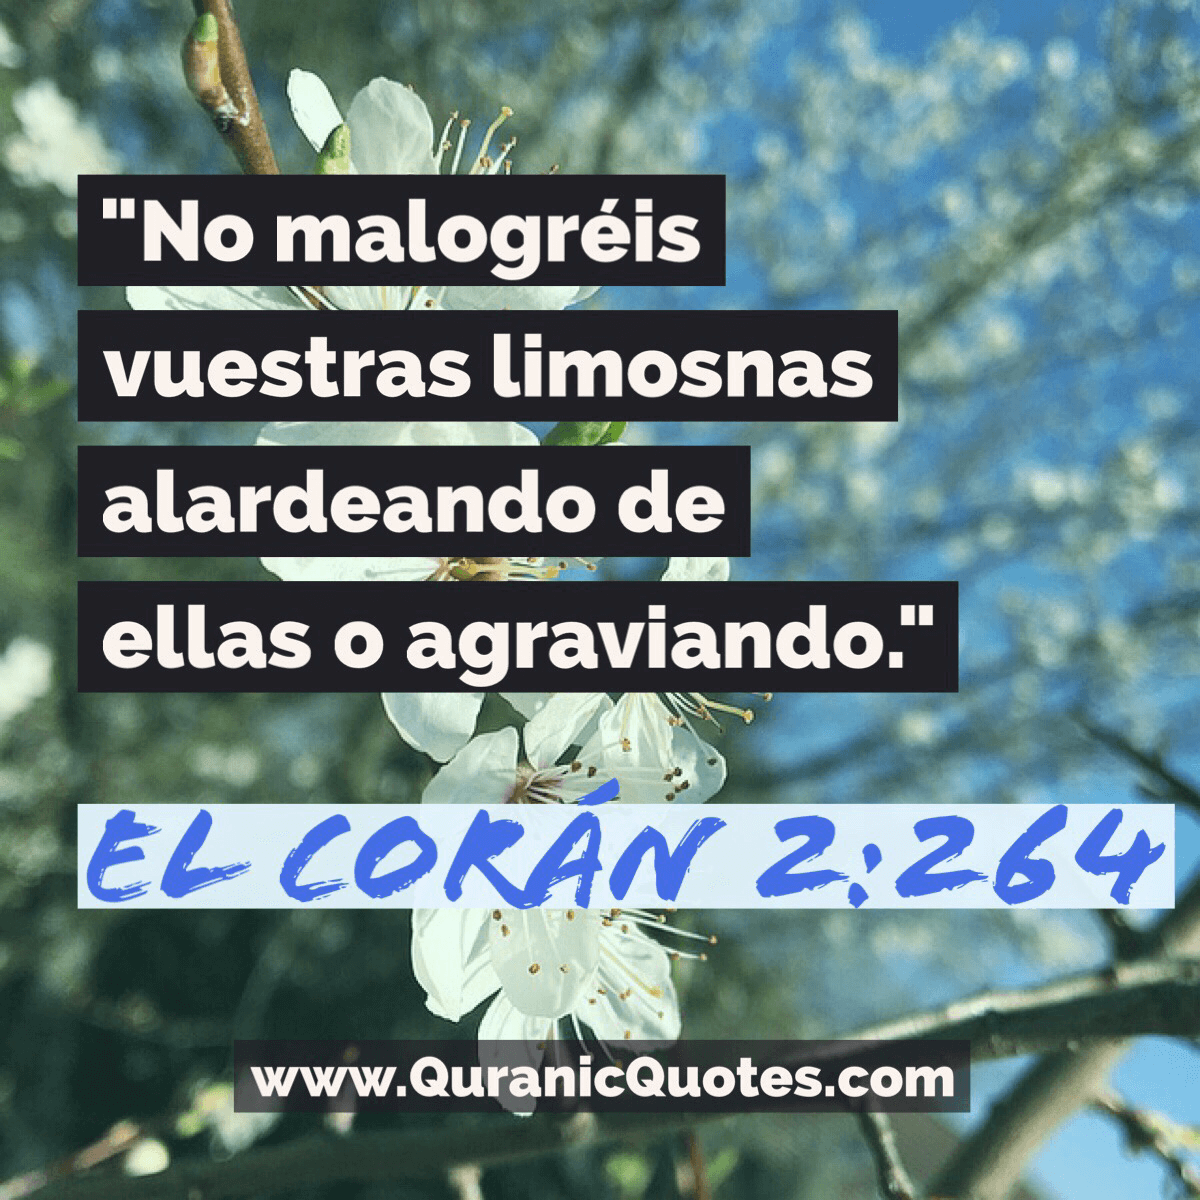 Quranic Quotes Español #27